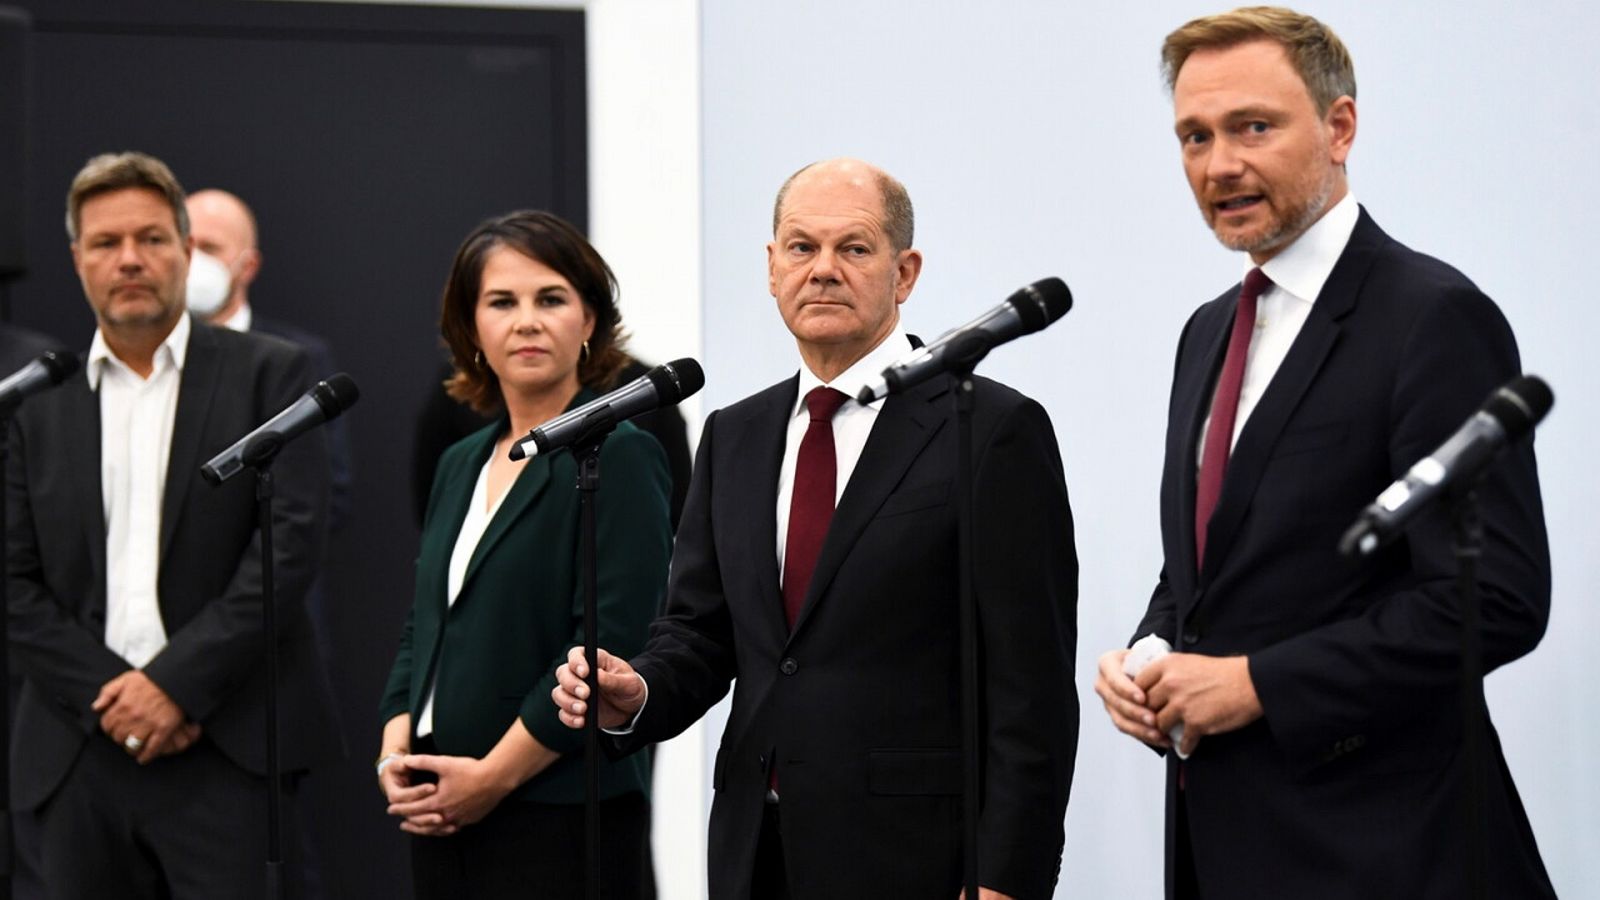 Los líderes de los partidos alemanes SPD, Verdes y FDP (Liberales) anuncian la disposición a formar un gobierno de coalición. REUTERS/Annegret Hilse